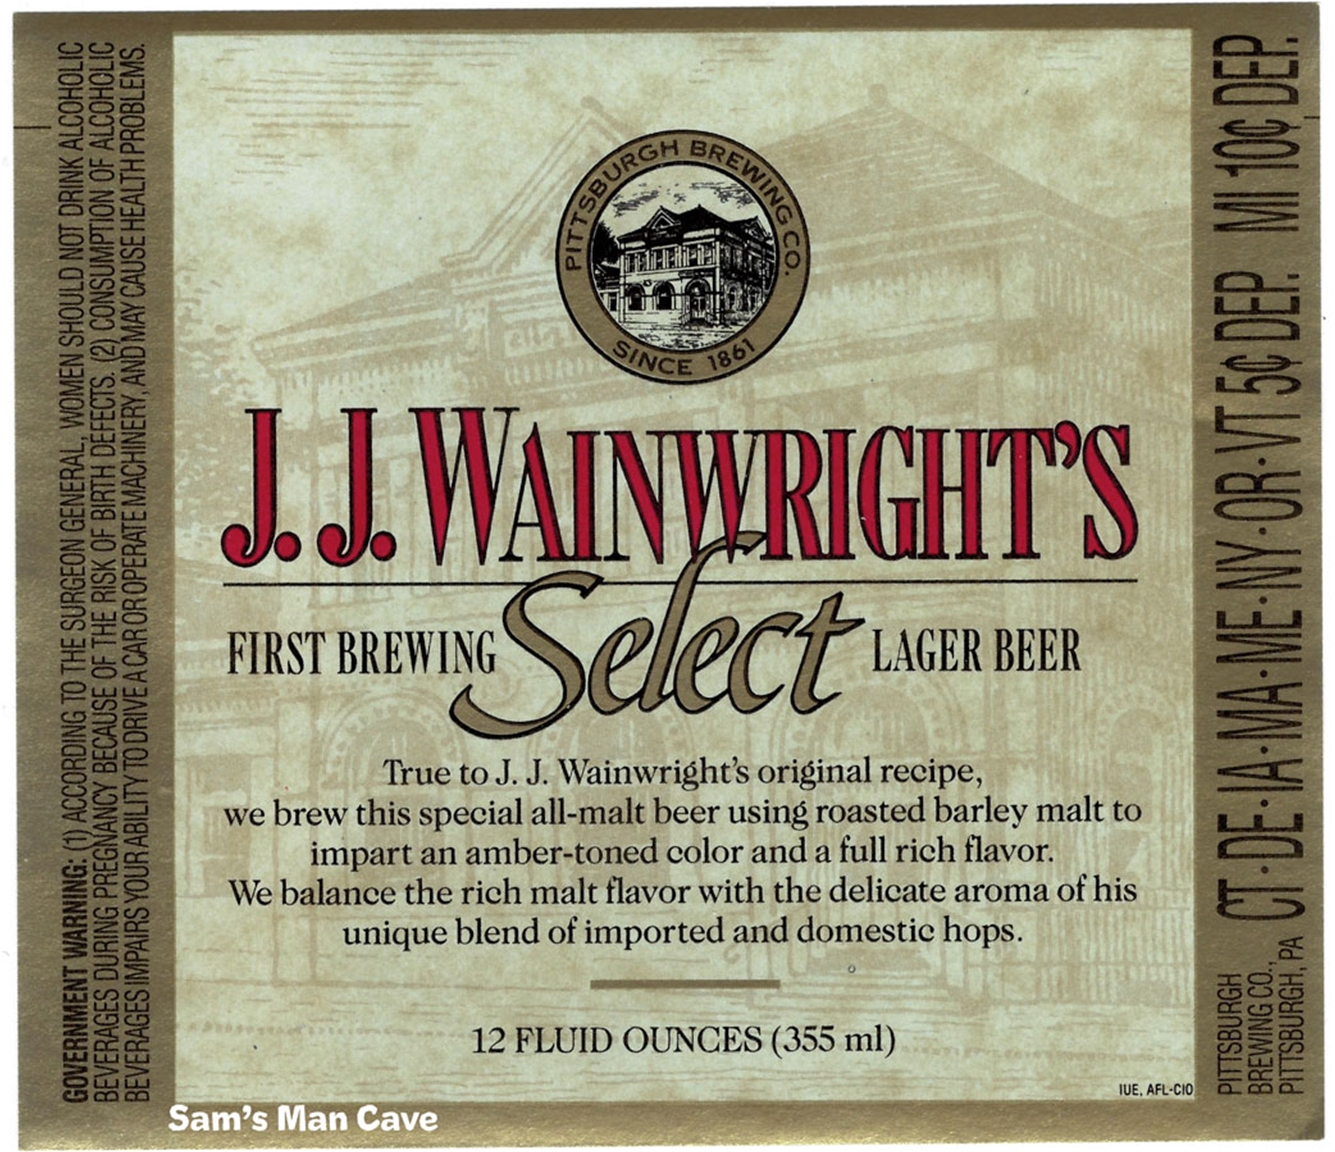 J.J. Wainwright's Select Beer Label